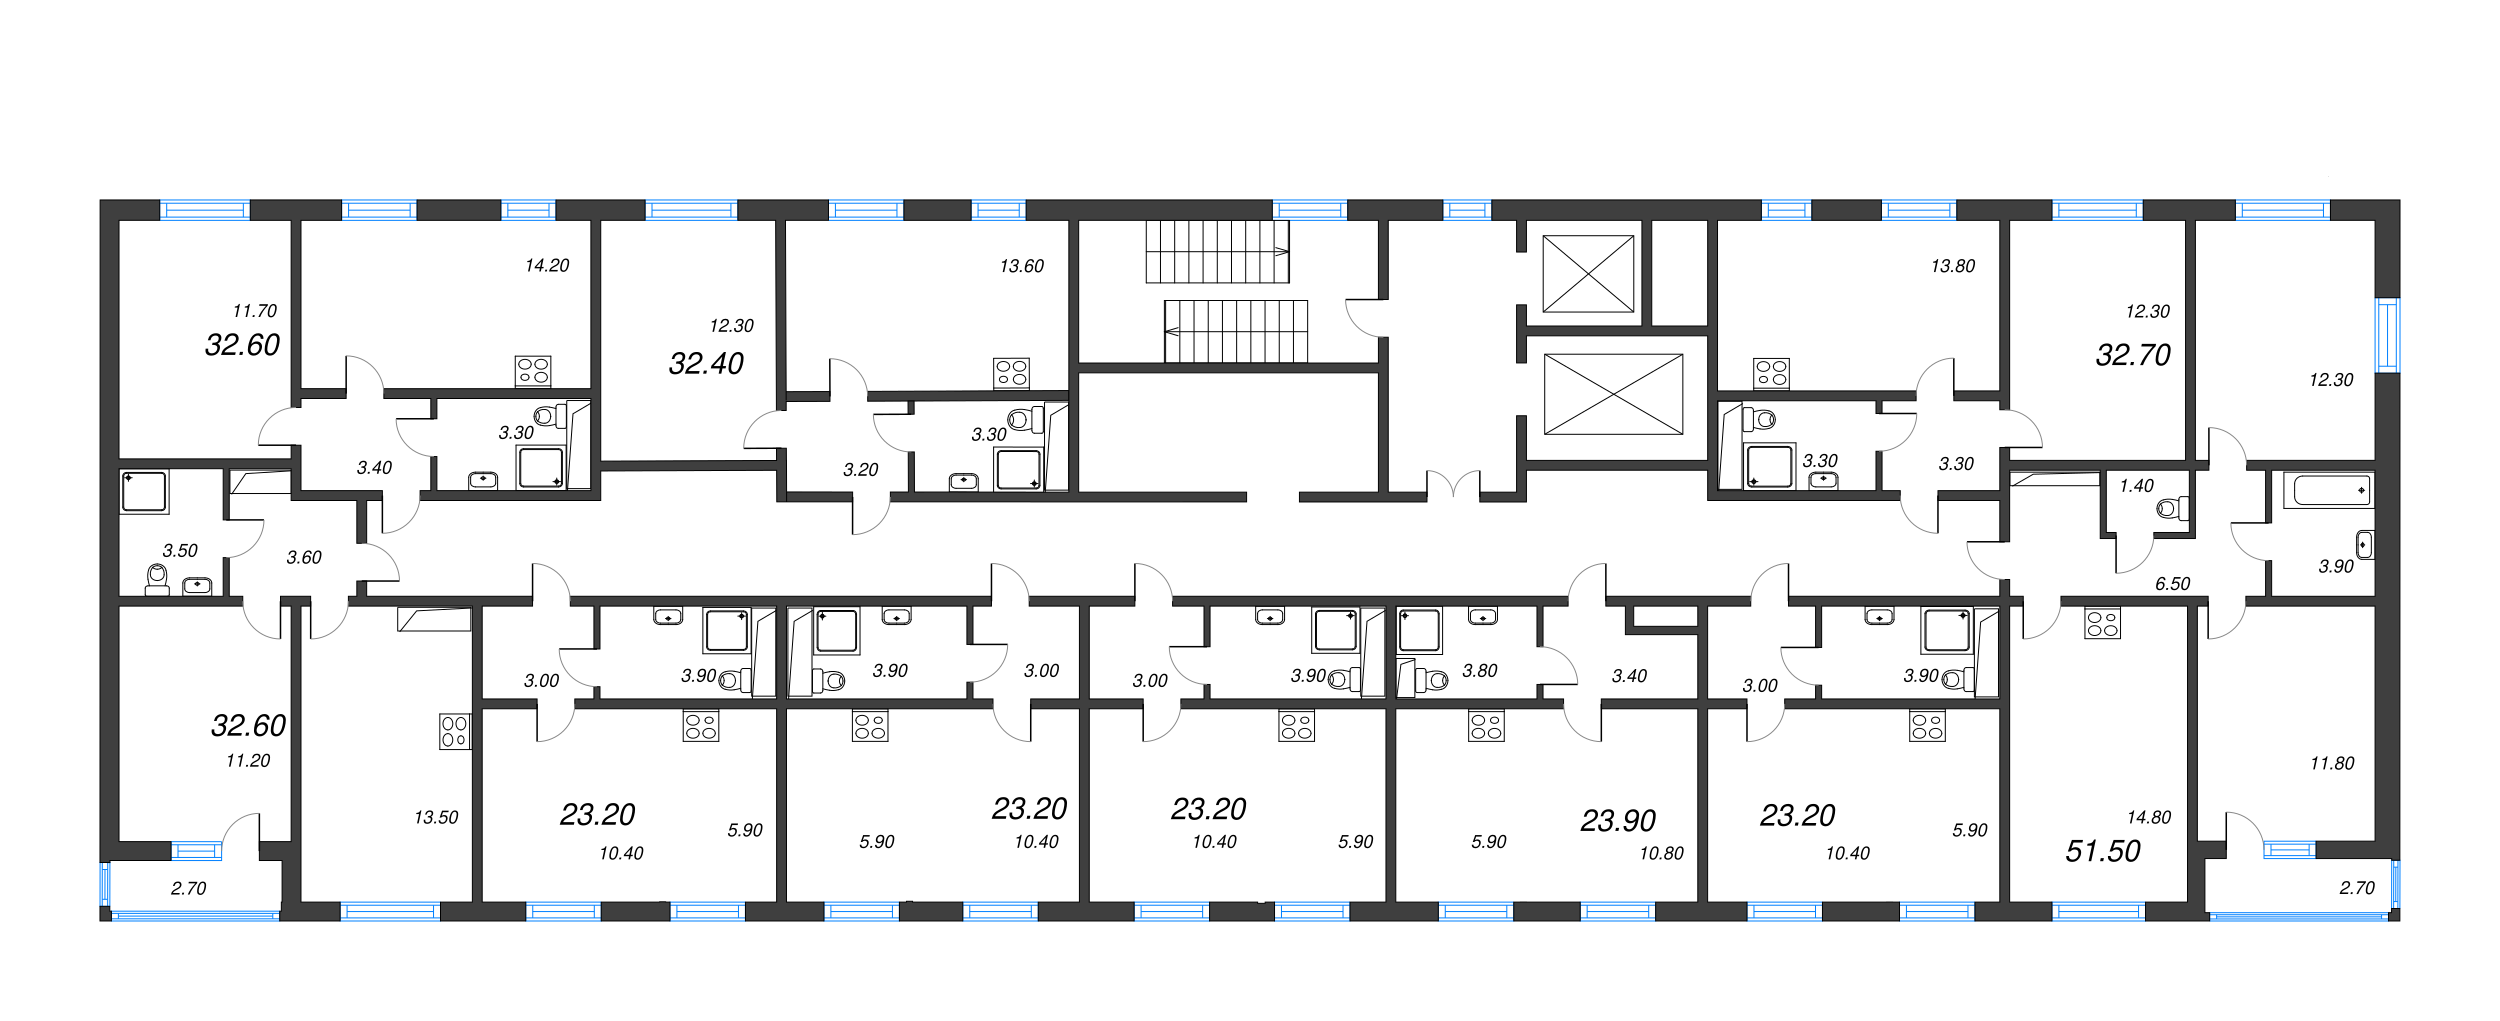 2-комнатная квартира, 51.5 м² в ЖК "ЛСР. Ржевский парк" - планировка этажа